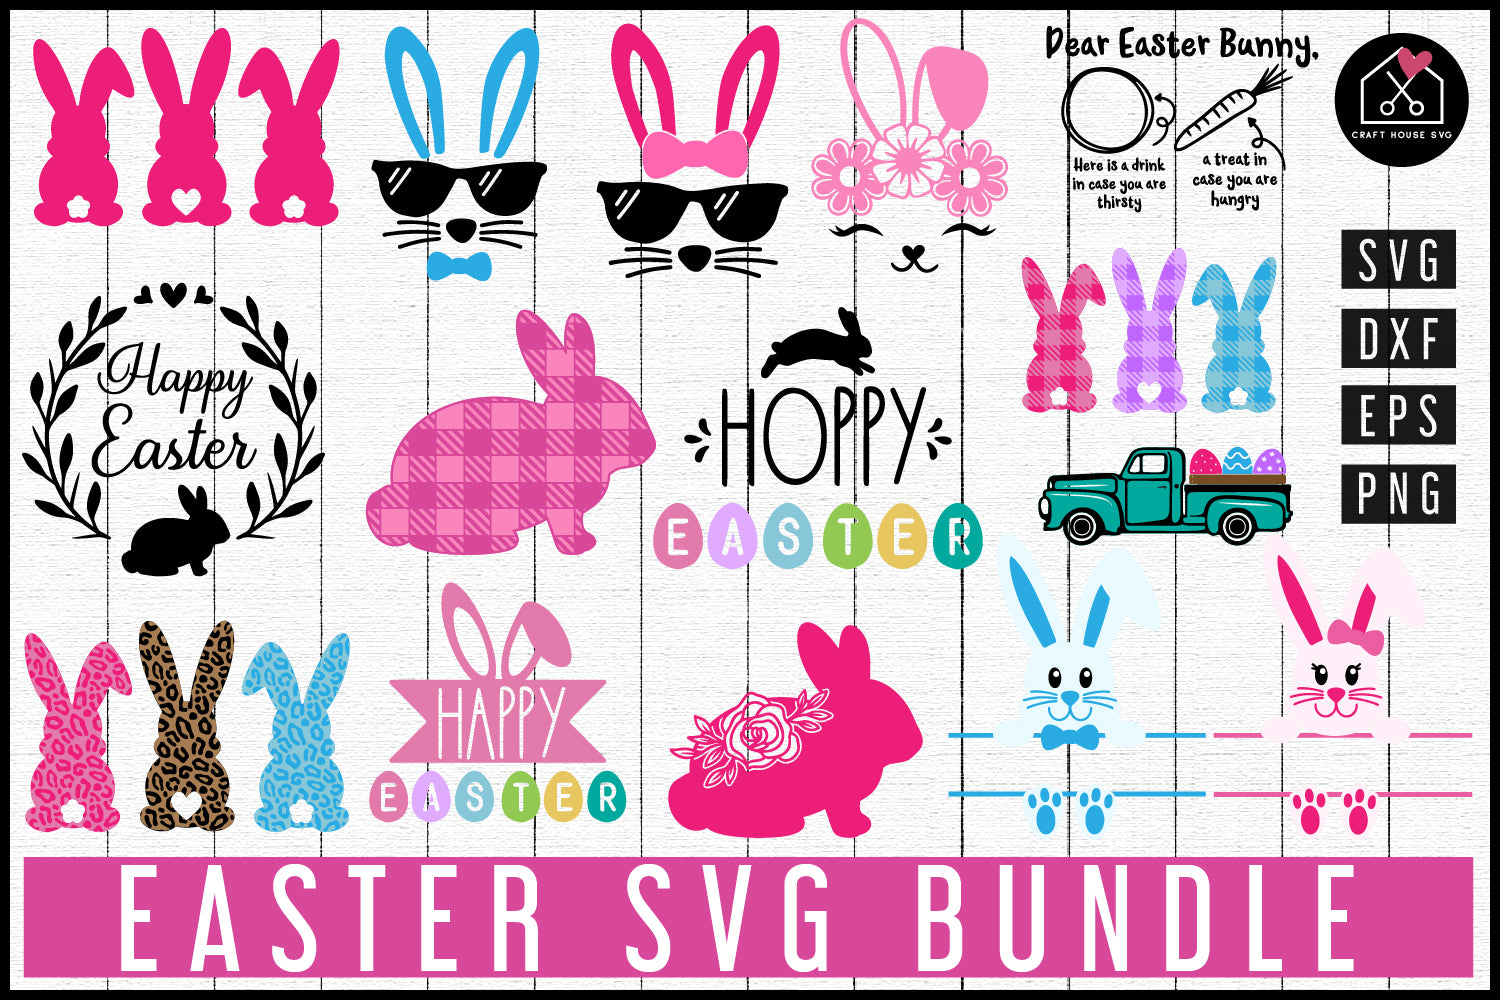 Easter SVG Bundle - Craft House SVG